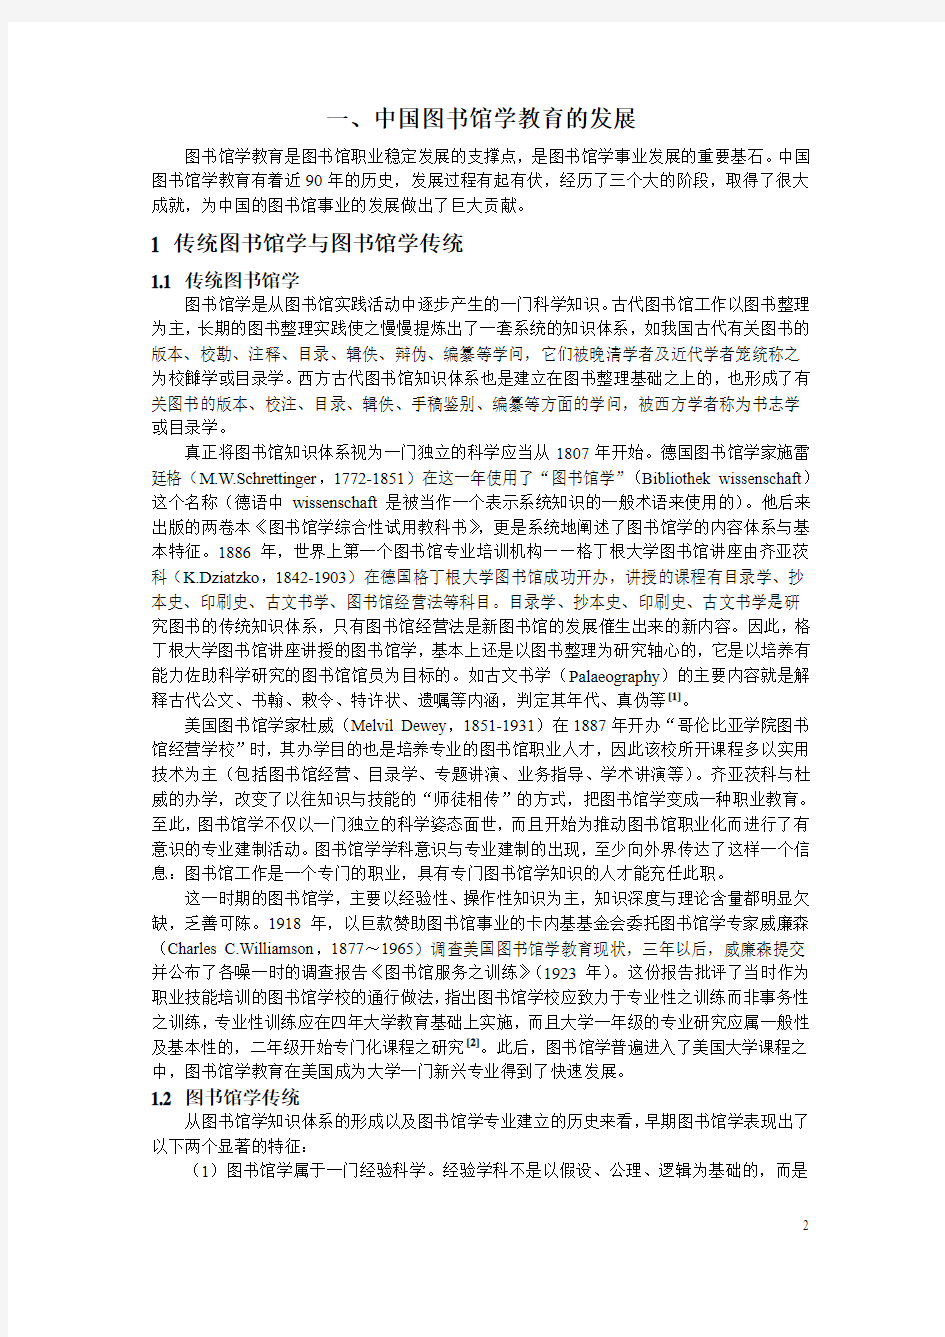 中国图书馆学教育发展战略报告(全文)